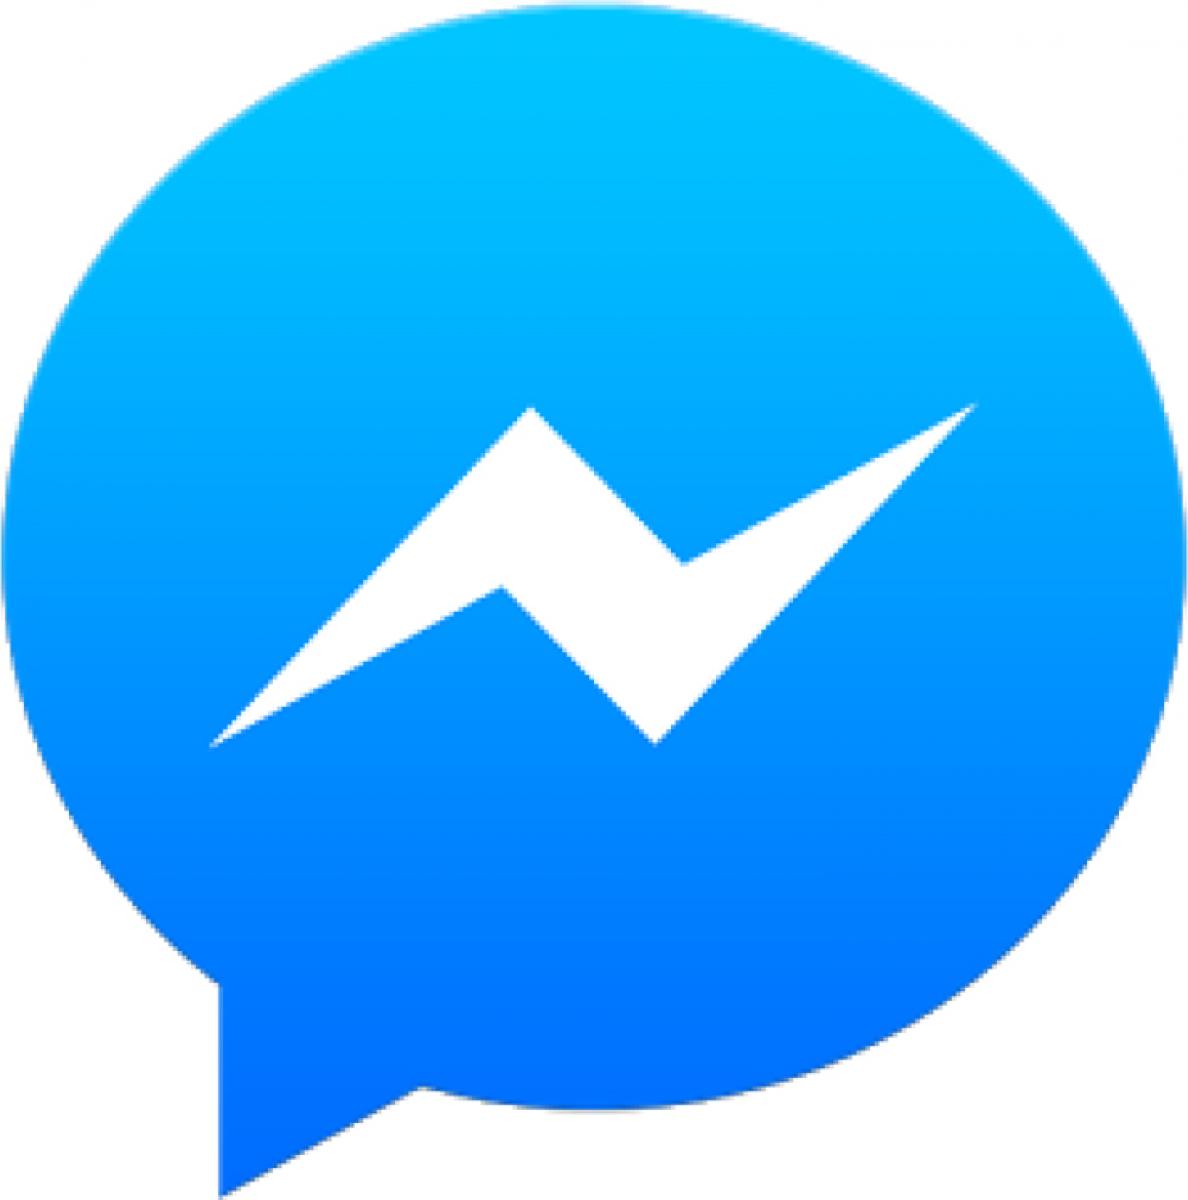 FB messenger goes solo, spells danger for WhatsApp